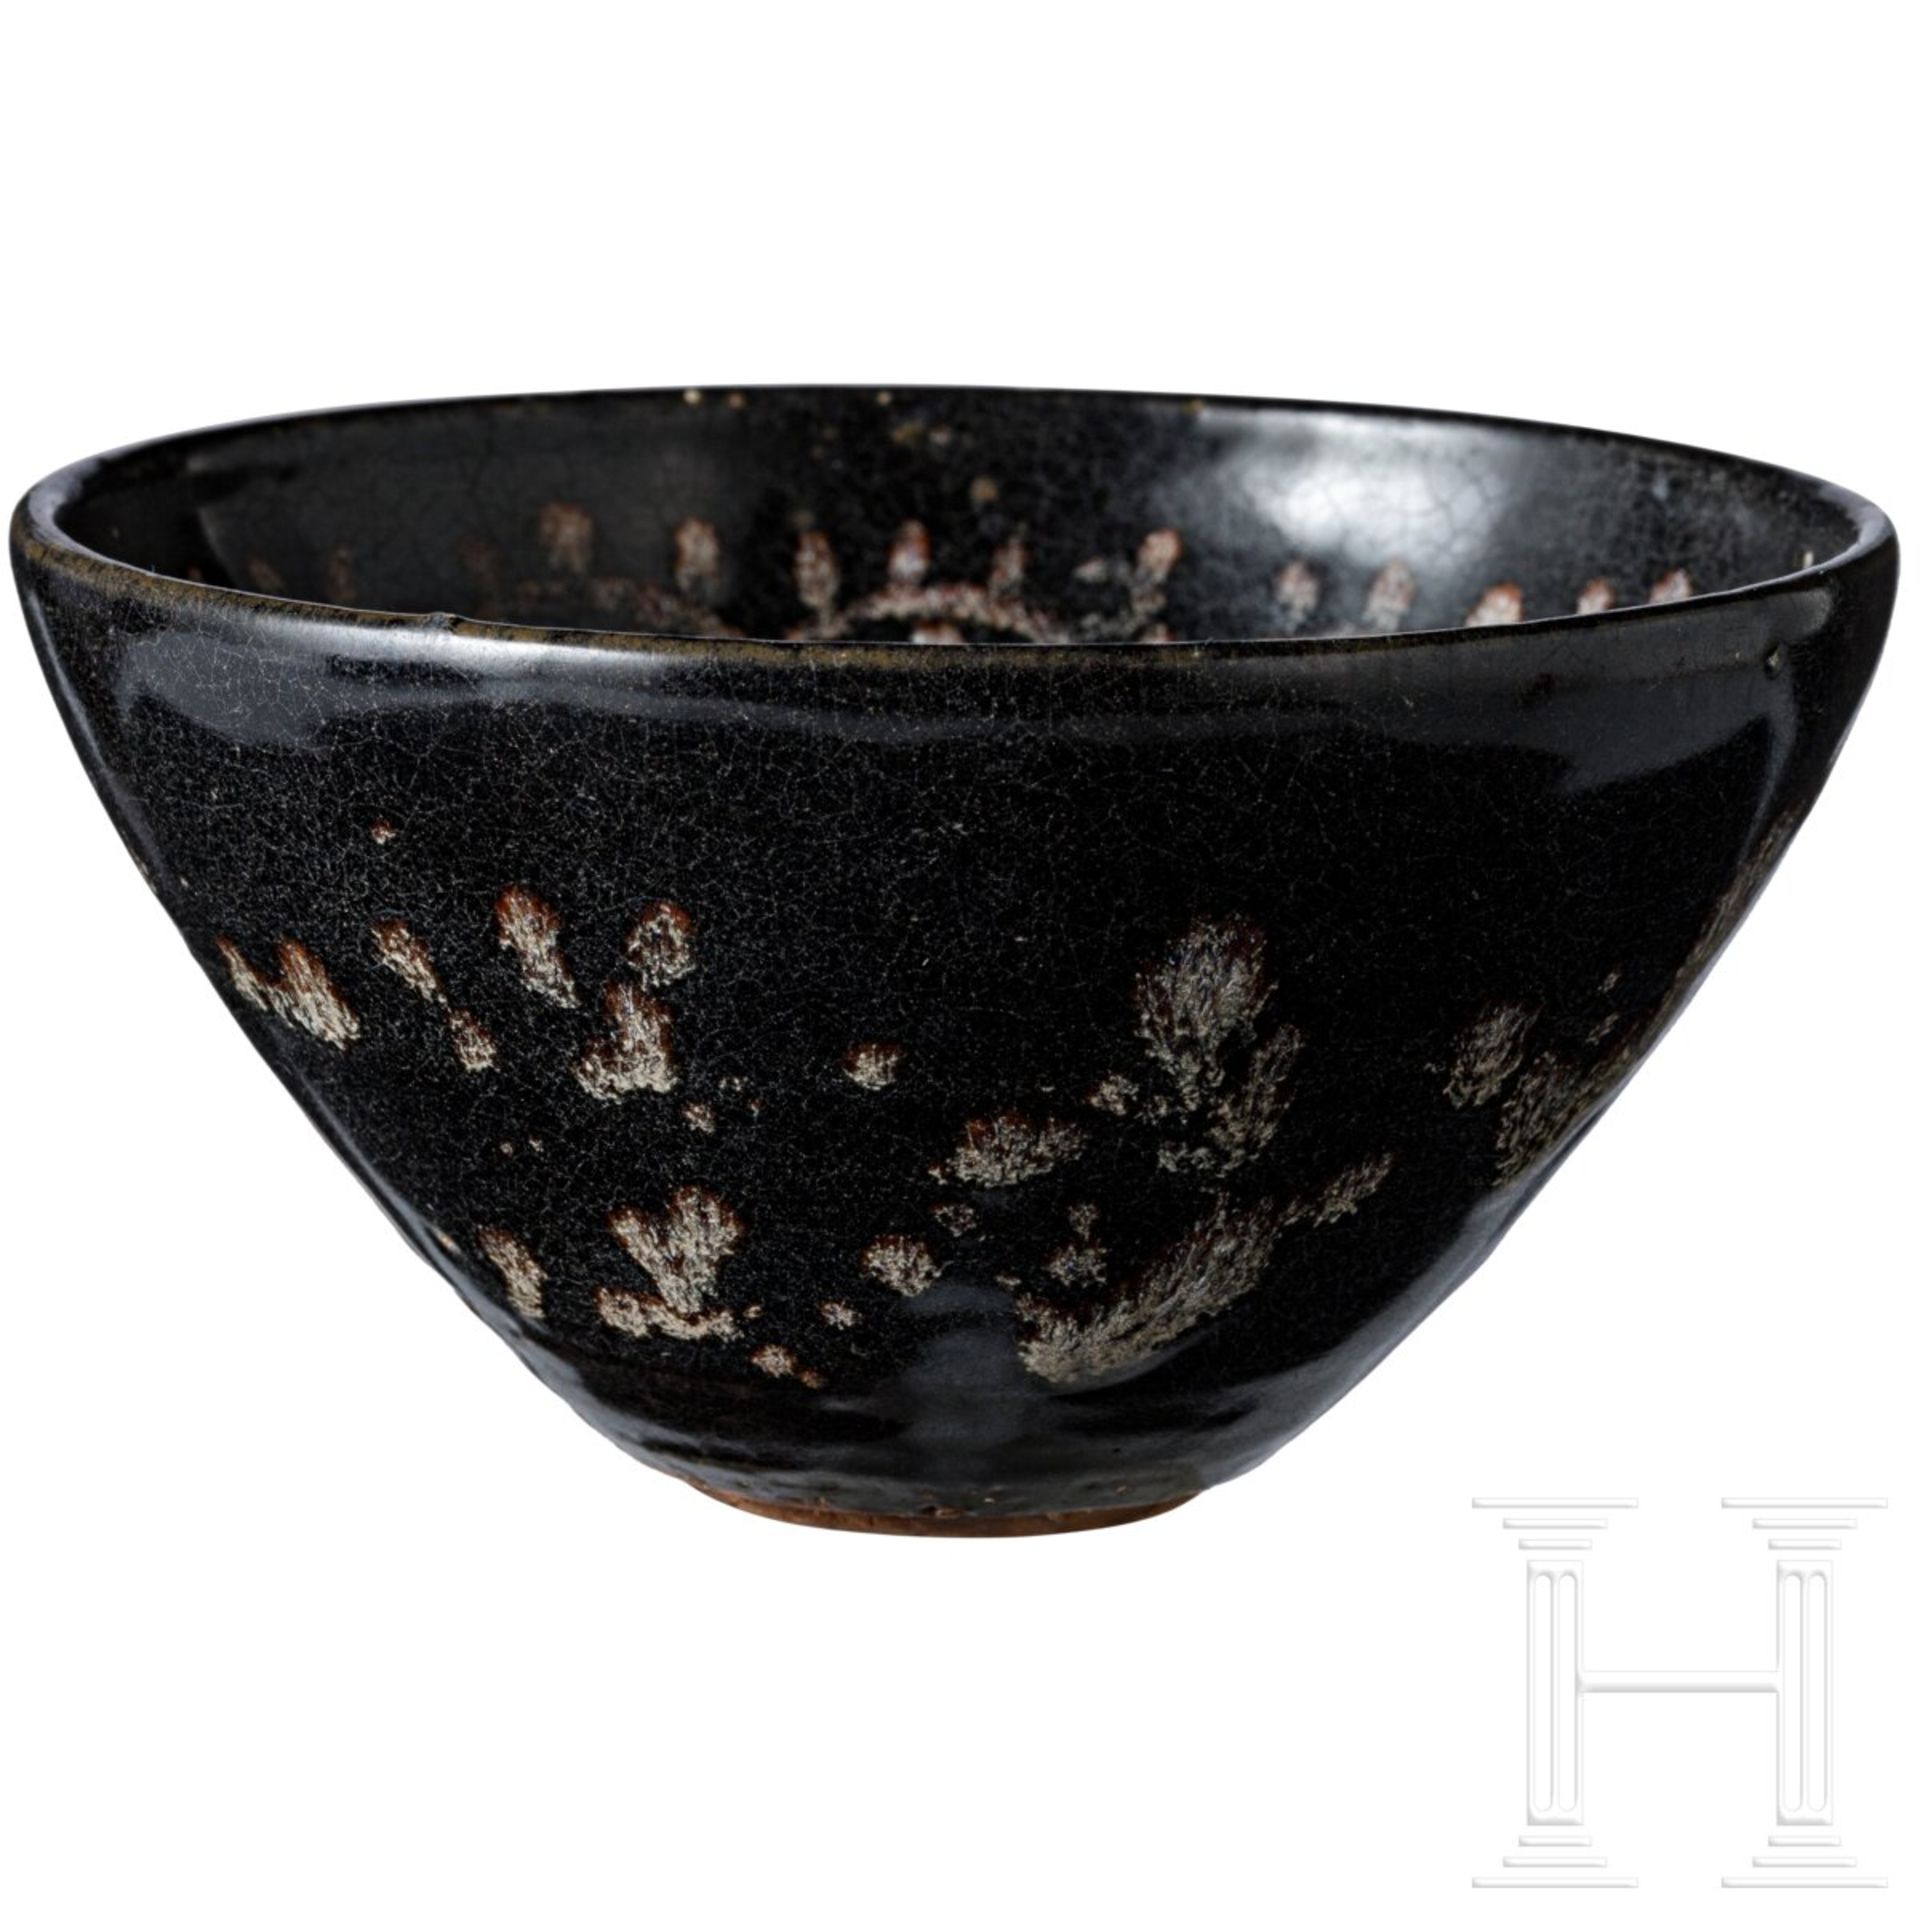 Sehr seltene Teeschale, bemalt im Jizhou-Tixi-Stil, südliche Song-/Yuan-Dynastie, 13. - 14. Jhdt. - Bild 3 aus 14